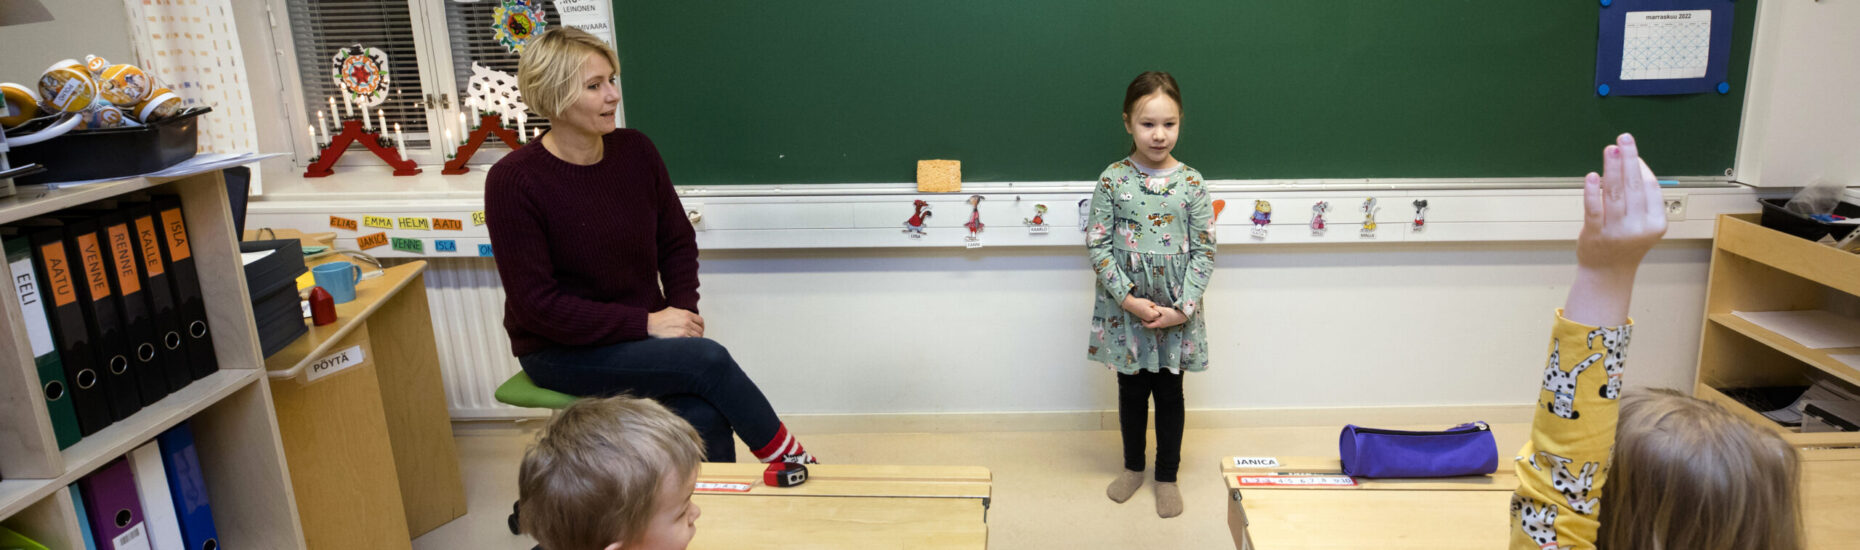 Esikoululaisten luokkahuoneessa opettaja istuu luokan edessä tuolilla. Hänen vieressään seisoo pieni tyttö ja edessään pulpeteissa istuu kaksi lasta.